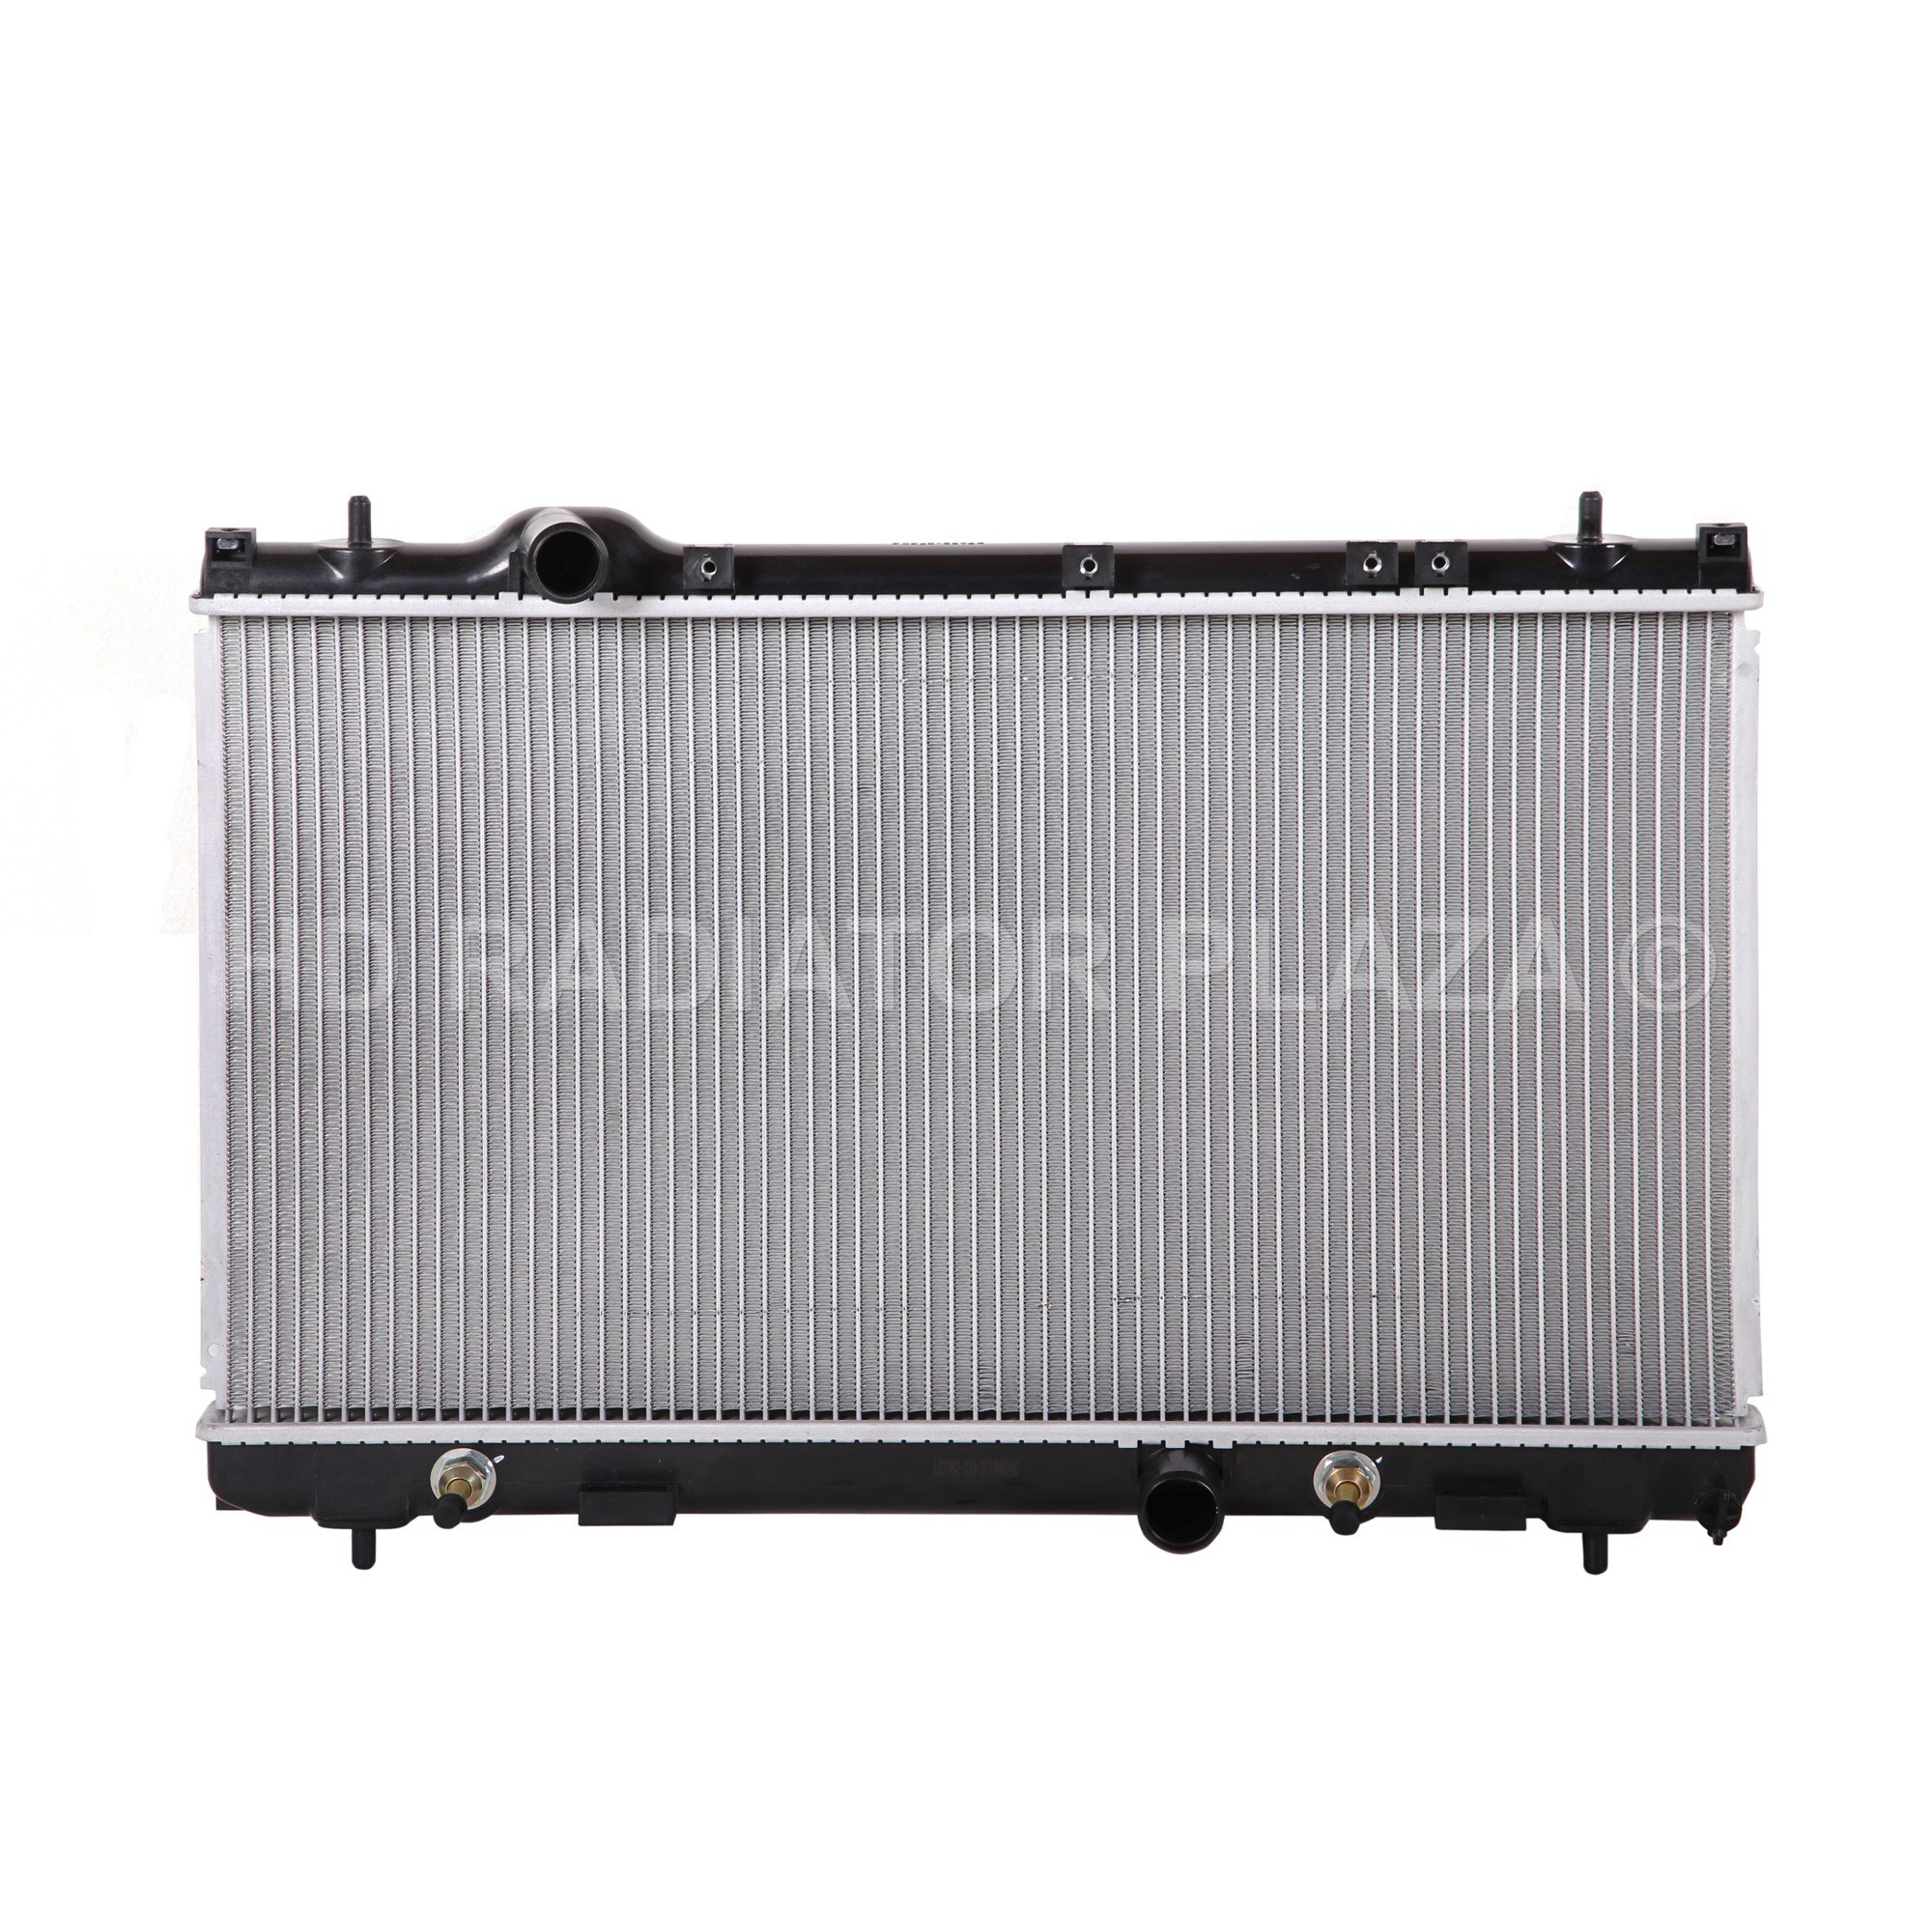 Radiator for 00-04 Dodge Neon / Chrysler Neon